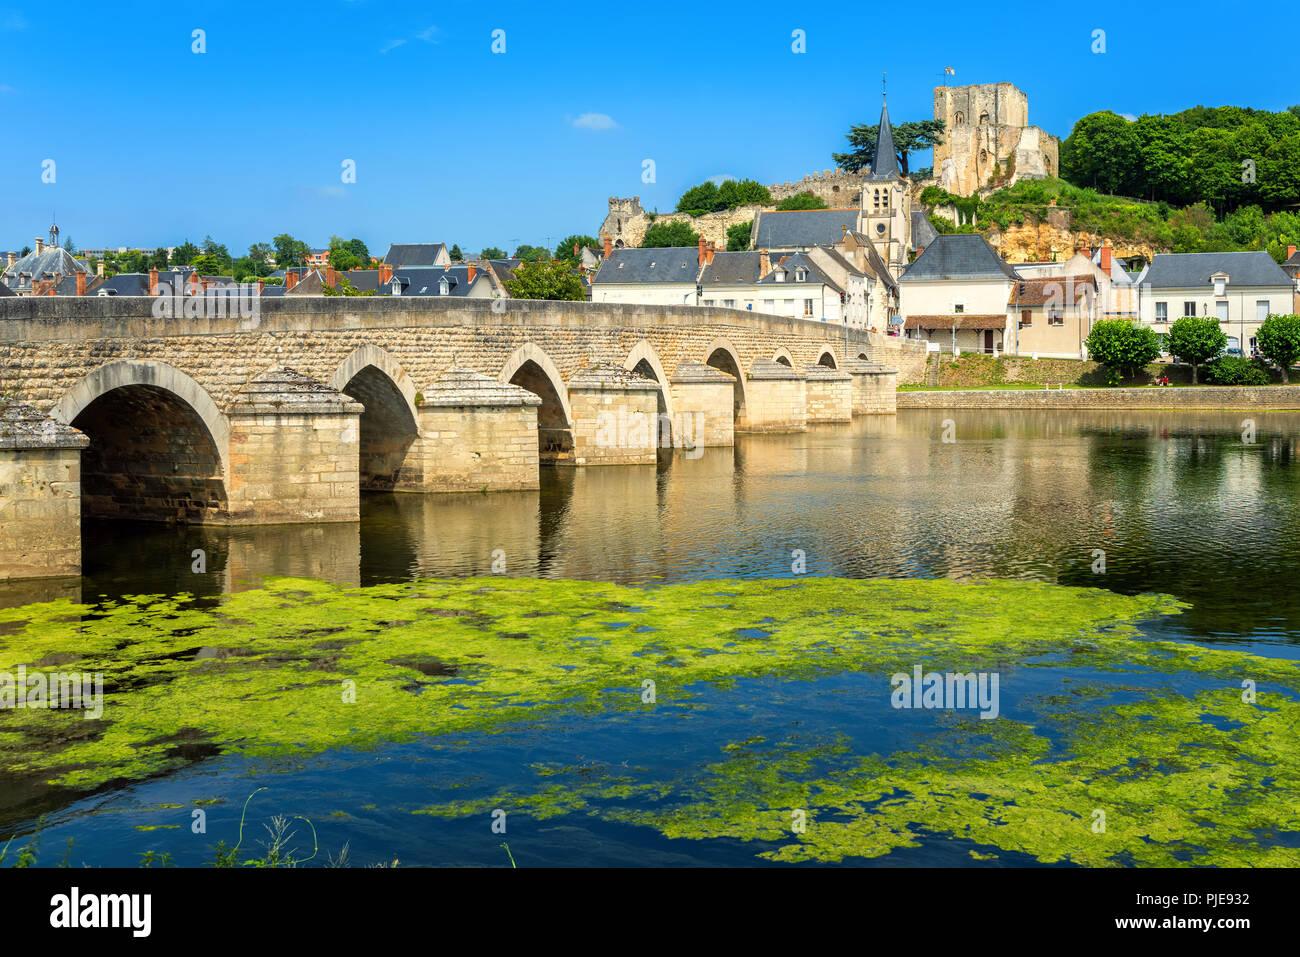 Montrichard centro medievale della Città Vecchia con il ponte di pietra, il castello e la chiesa, sul fiume Cher nella Valle della Loira, Francia Foto Stock